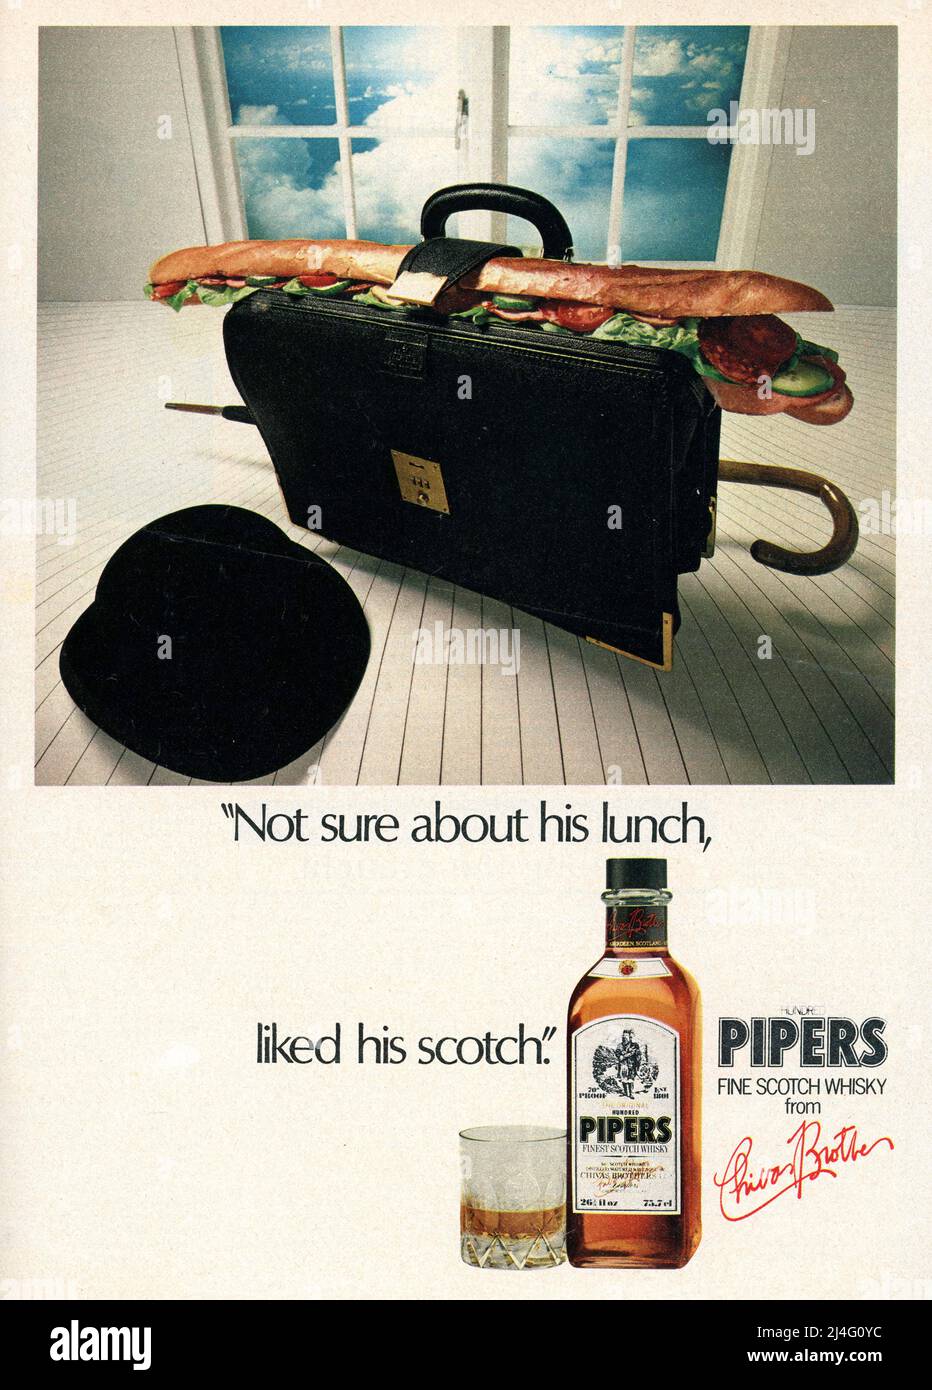 Publicité dans le magazine pour 100 Pipers Scotch Whisky, avec un chapeau de melon et un étui court il est clairement destiné aux hommes d'affaires, les chapeaux de bowling ont été portés par les messieurs conservateurs de ville jusqu'aux années 1990. Royaume-Uni 27 mai 1979 Banque D'Images